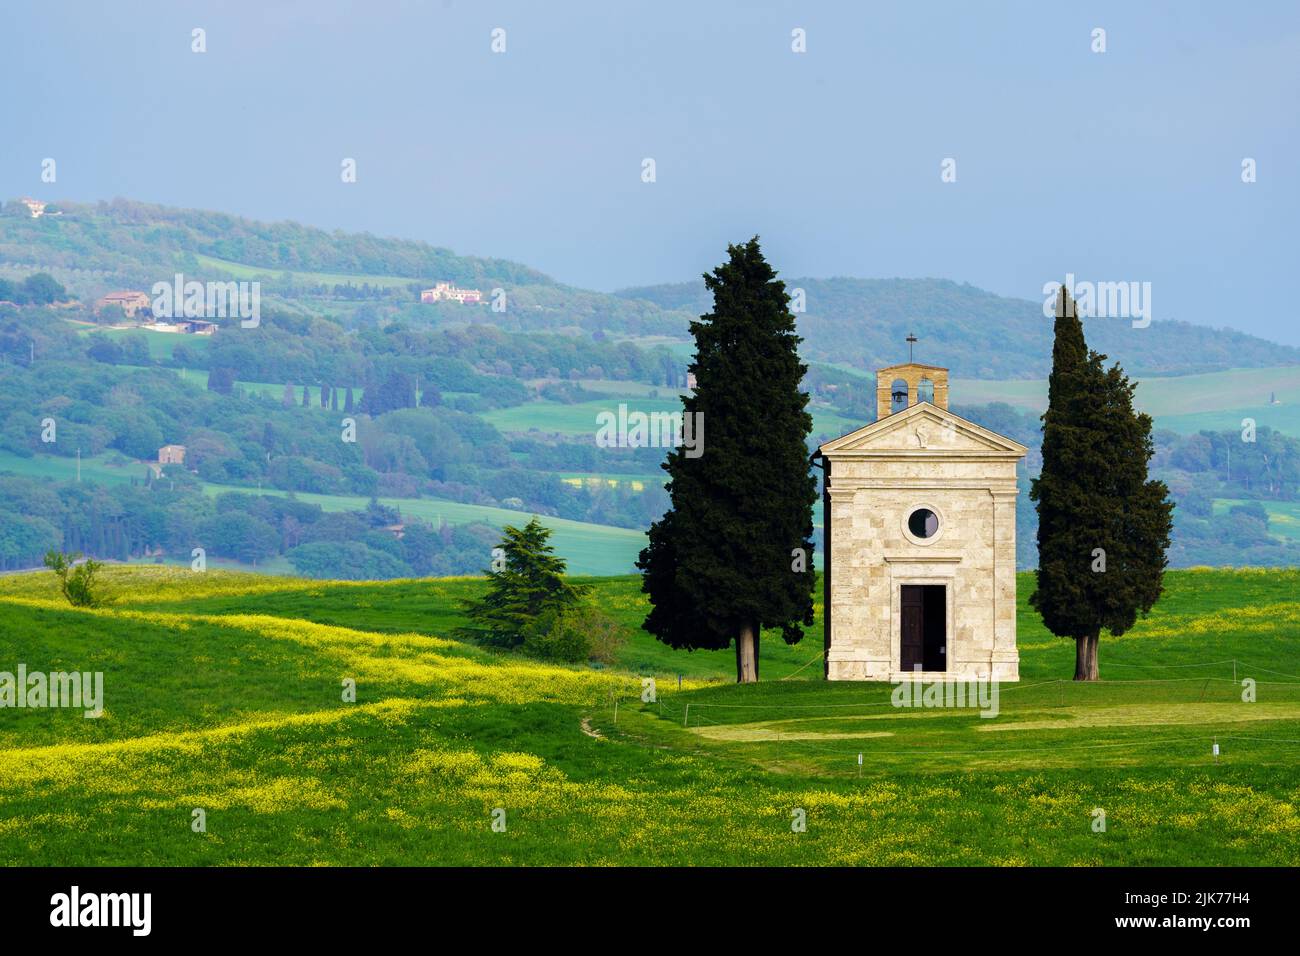 Chapel of Our Lady of Vitalieta (Tuscany, Italy) Stock Photo